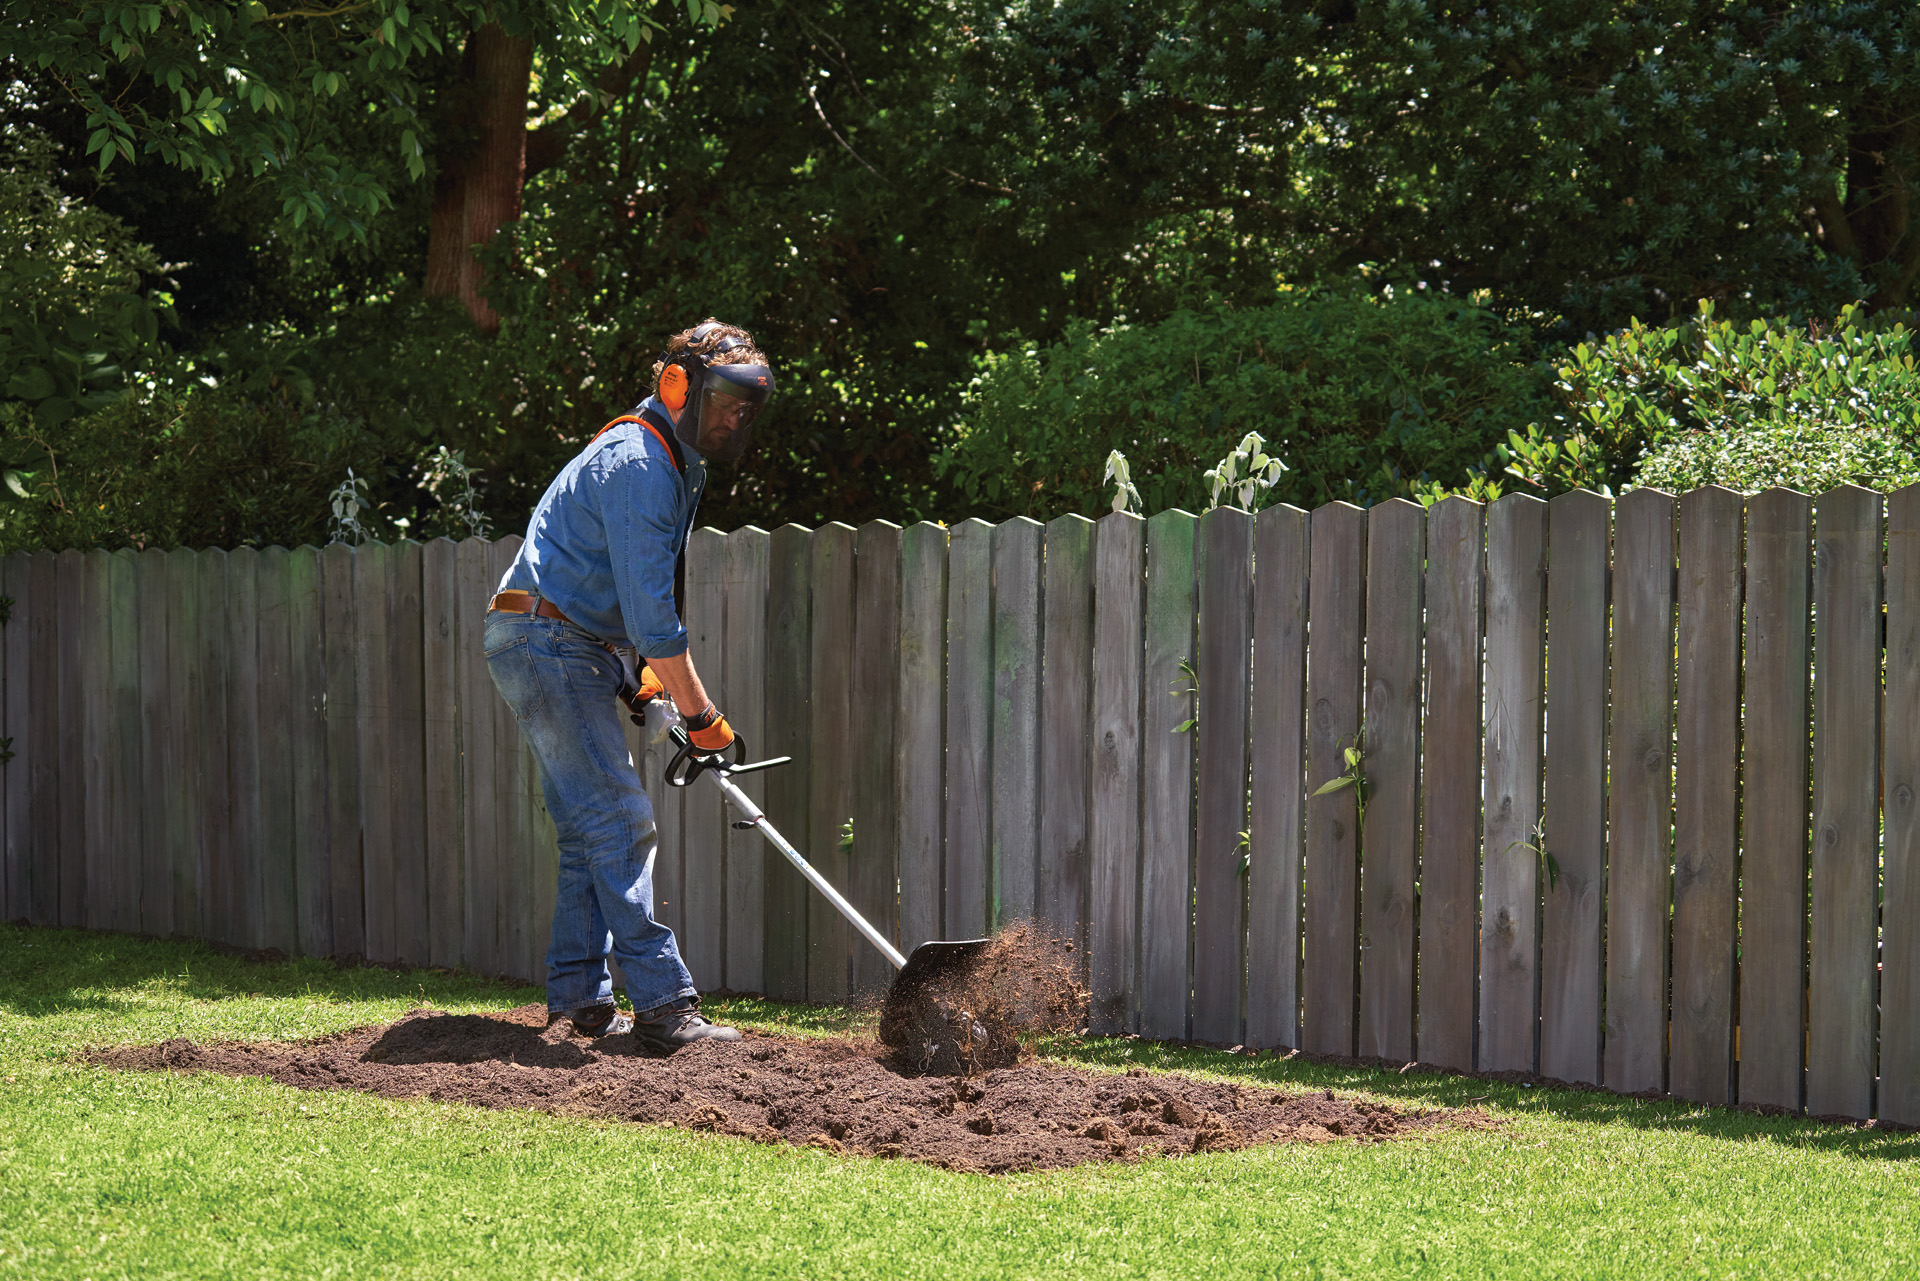 Person in Schutzausrüstung gräbt eine Fläche im Garten für ein Gemüsebeet mit einem STIHL KombiSystem mit Bodenfräse um